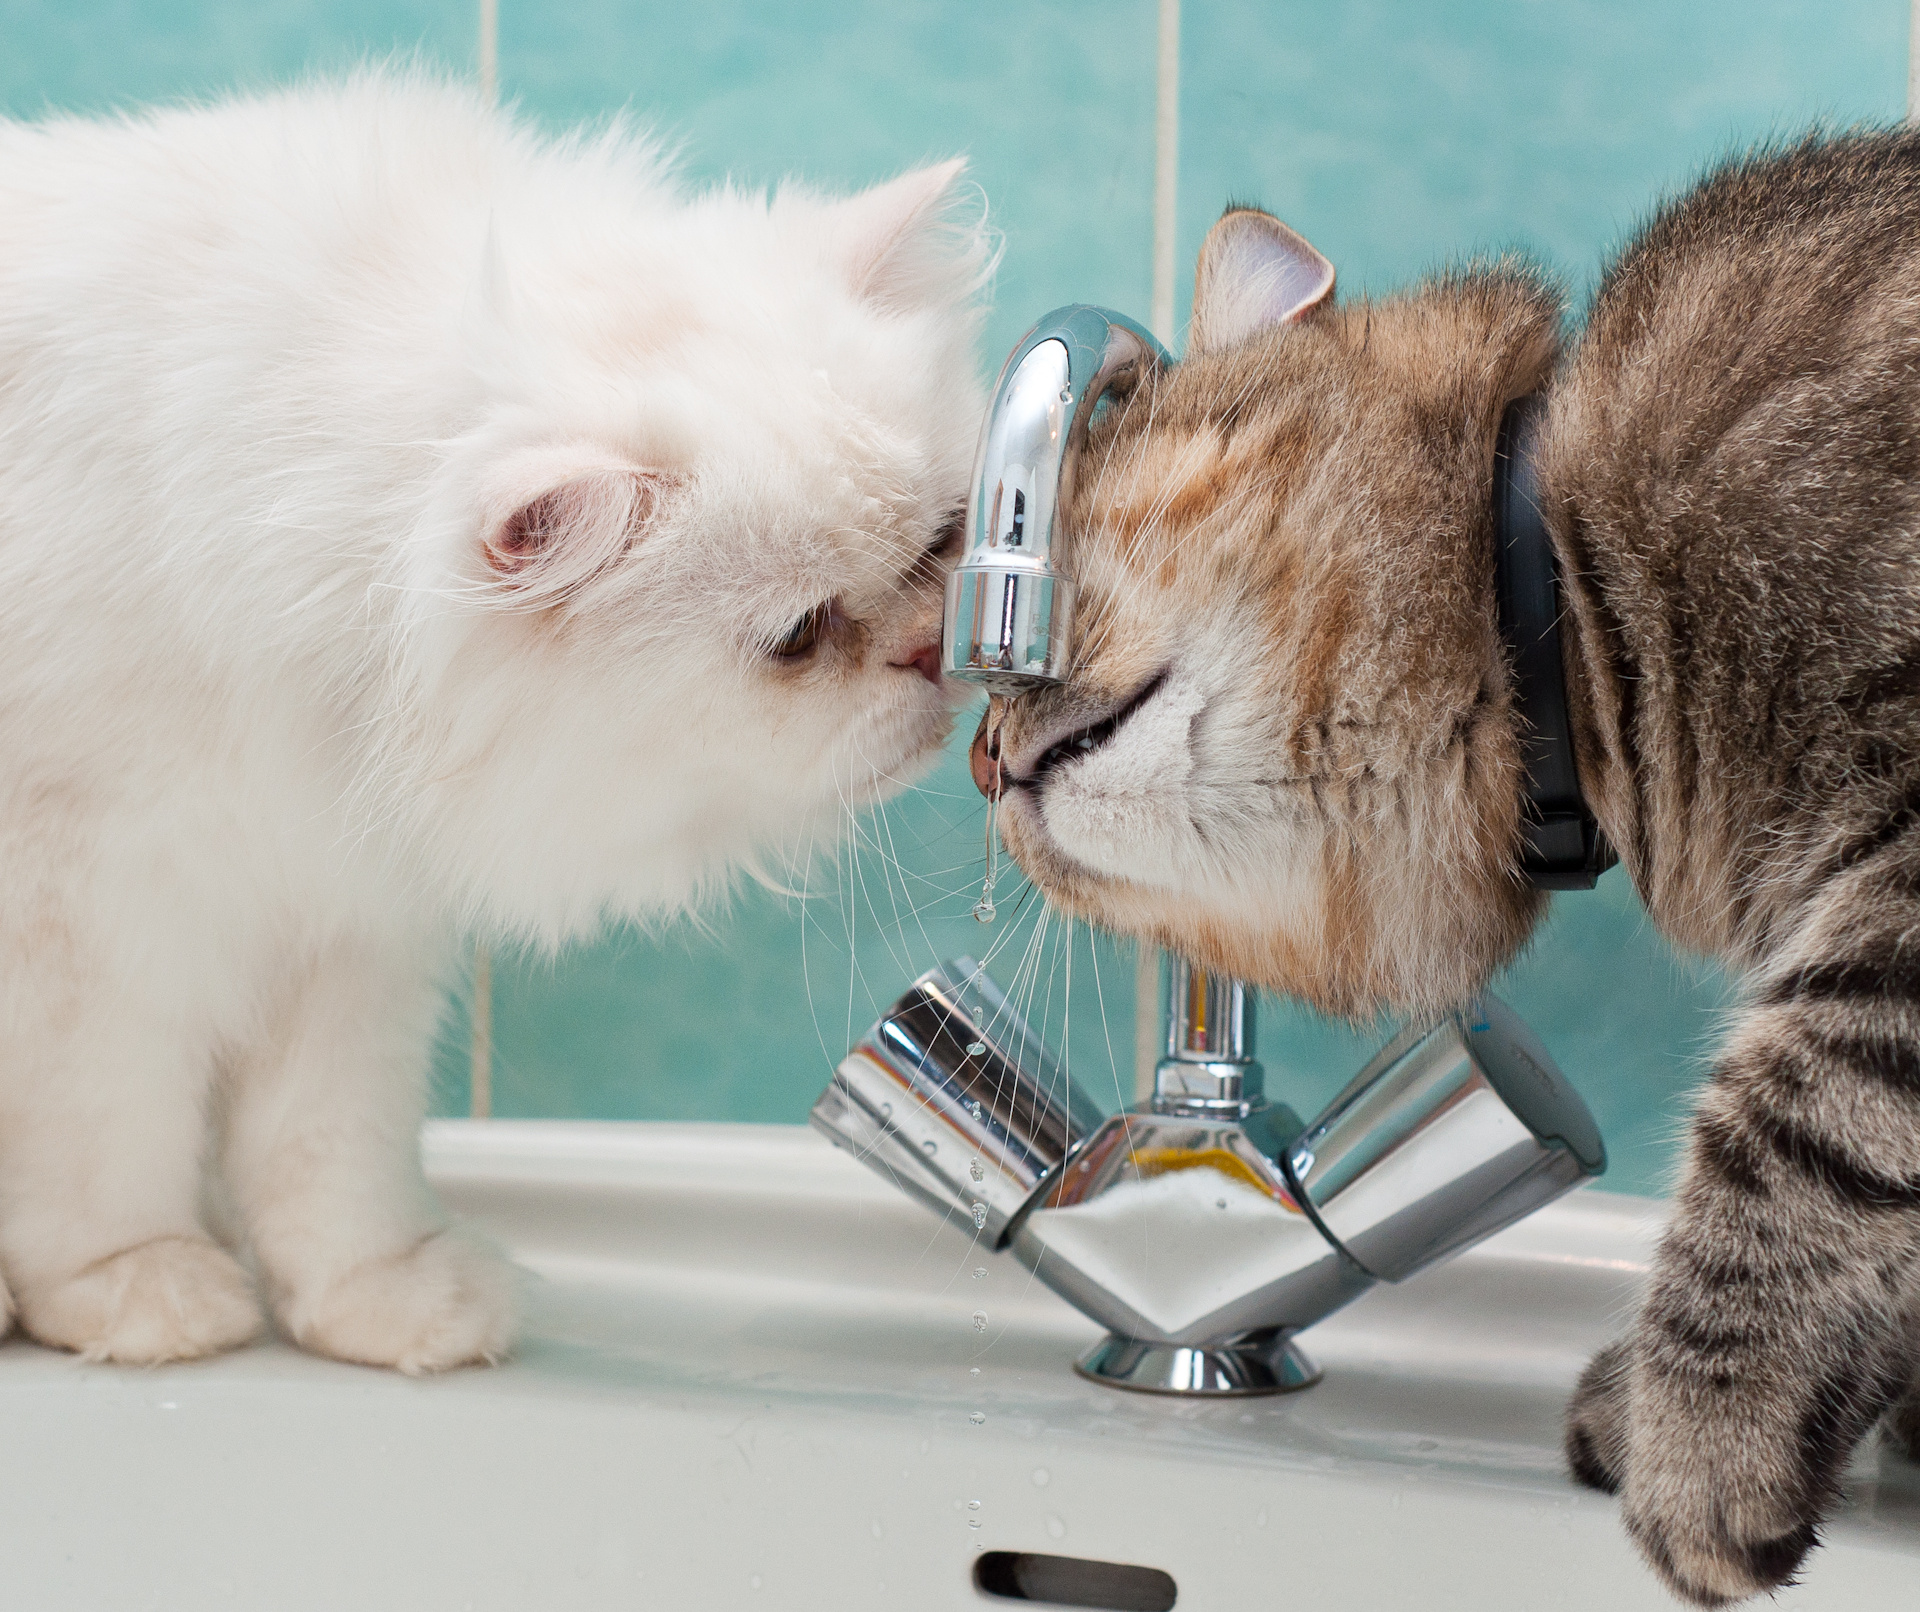 Fotos von Hauskatze flauschiger Wasserhahn Schnurrhaare Vibrisse ein Tier 1920x1612 Katze Katzen Flaumig Flauschige Tiere